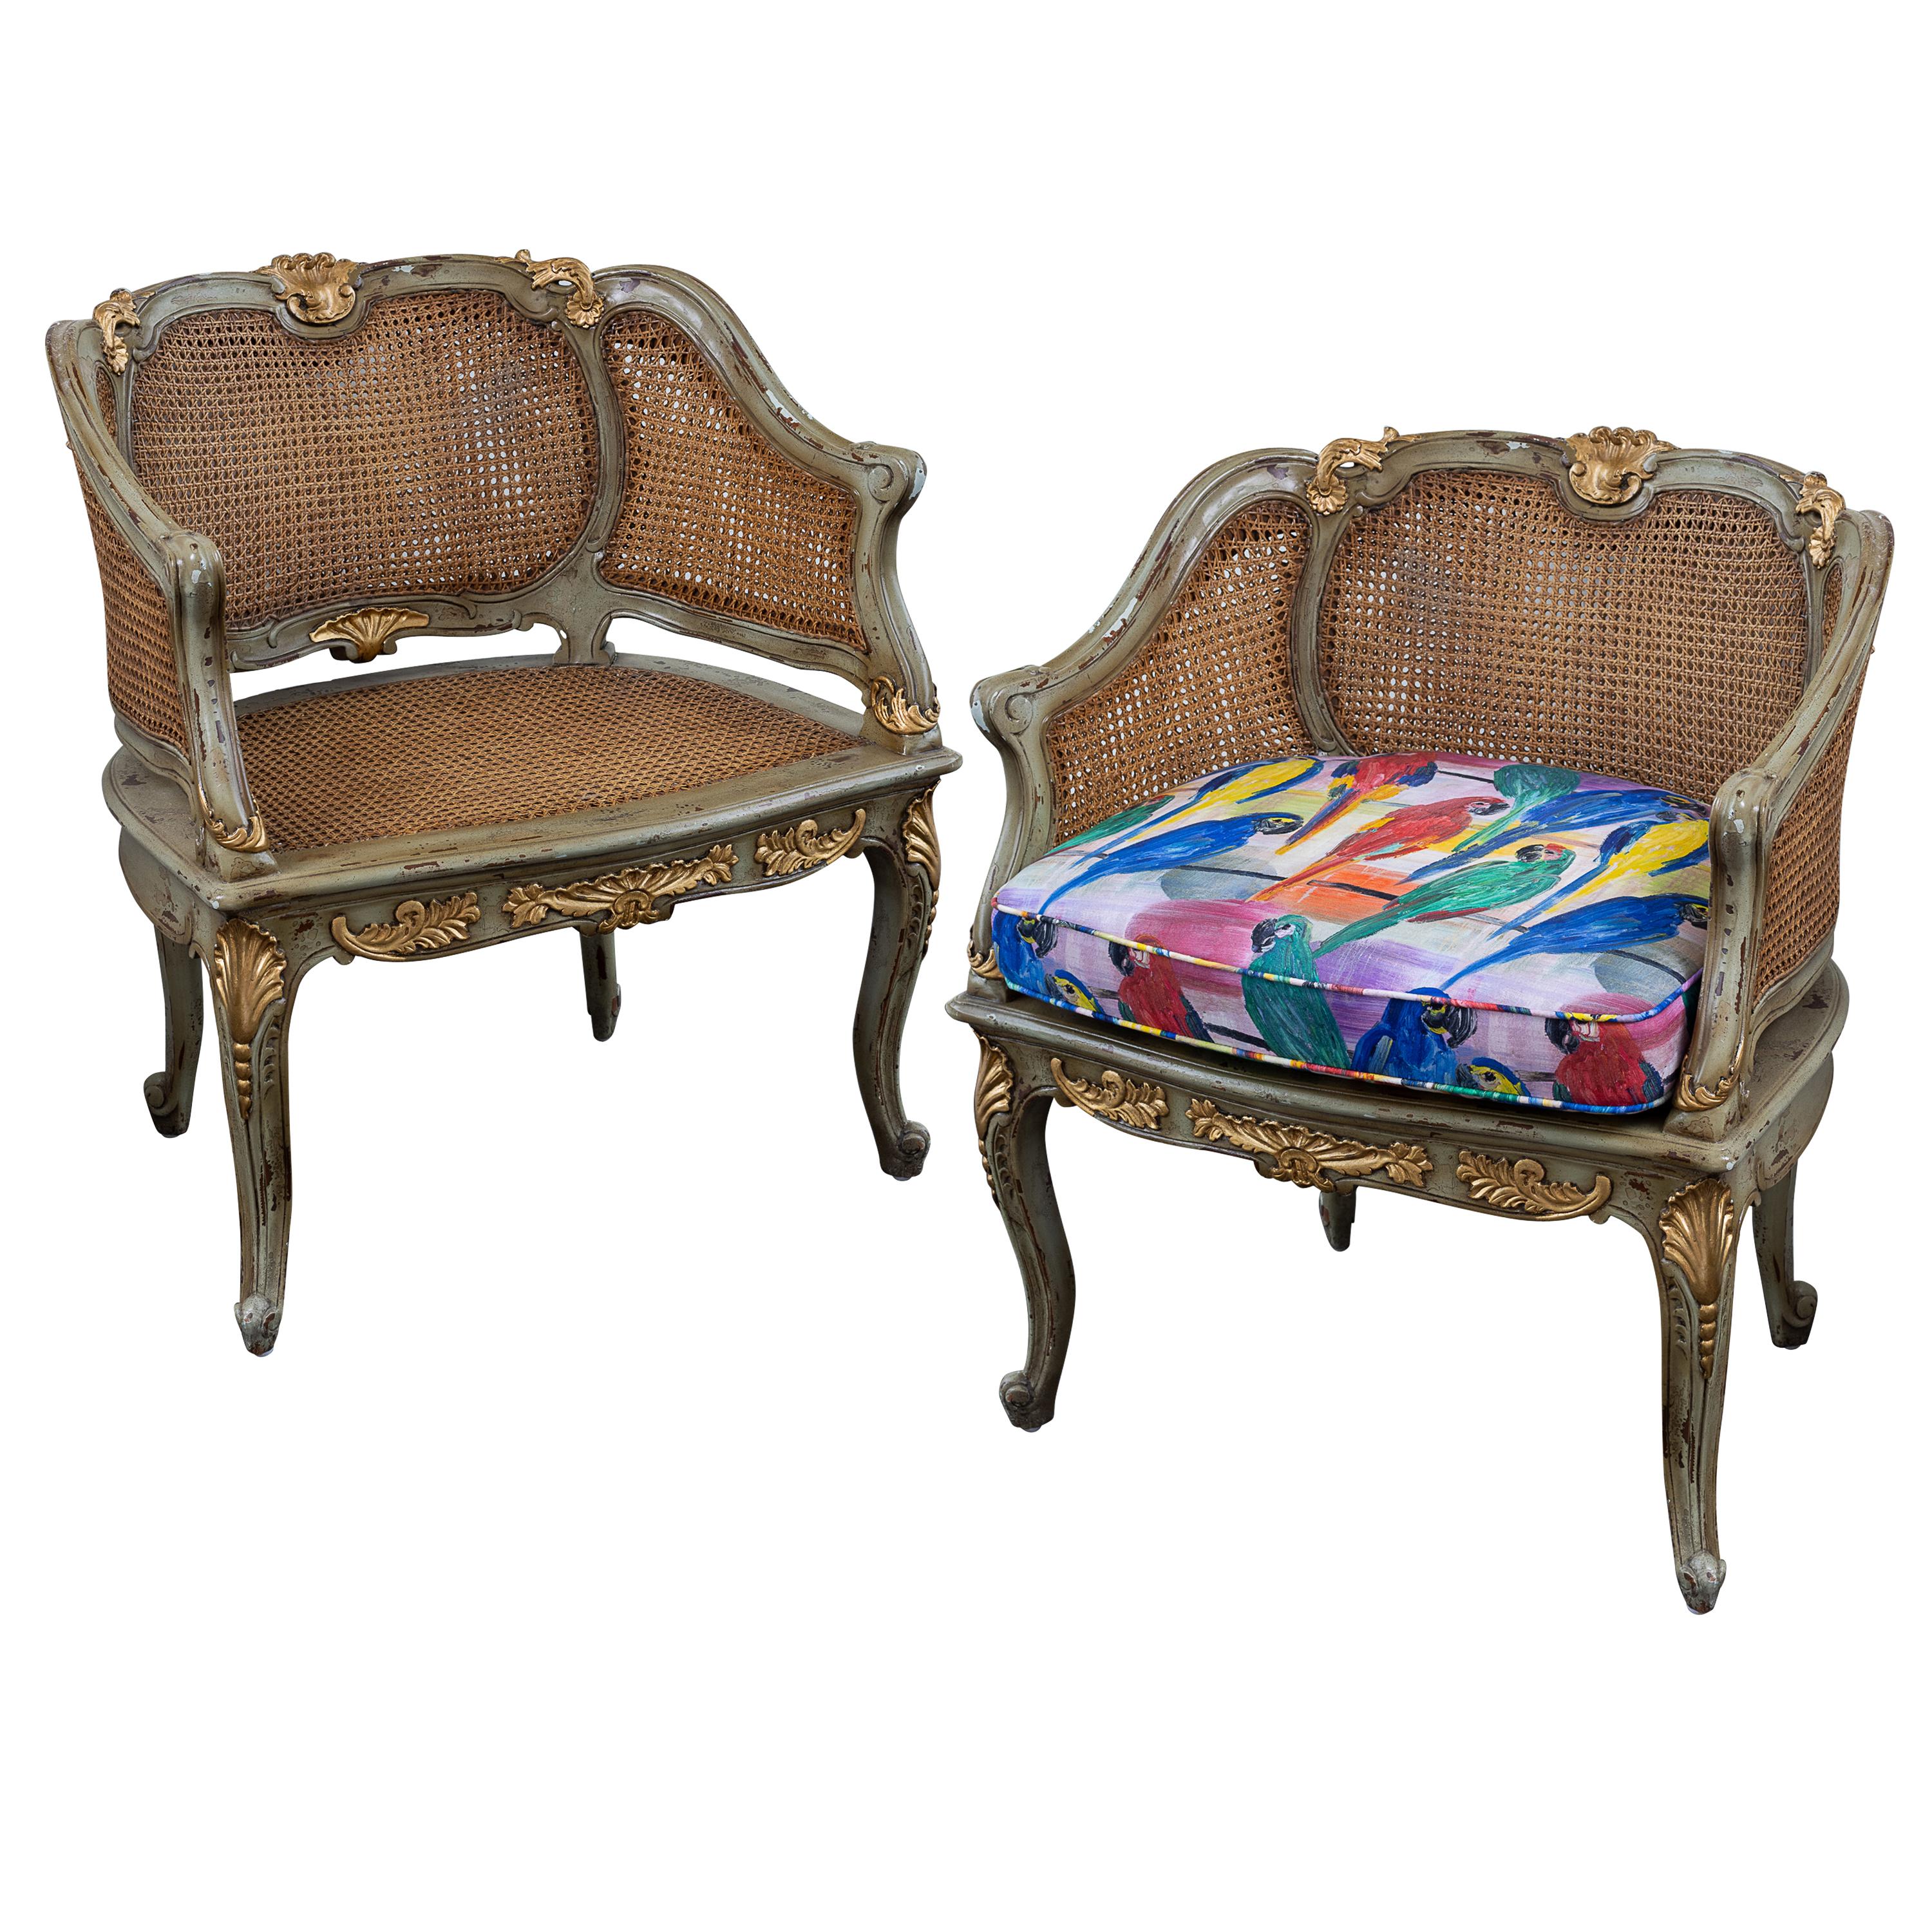 Paire de chaises bergères françaises de style Louis XV du début du 19e siècle, avec dossier et assise cannelés. Bois peint à la main et sculpté à la feuille d'or. Coussin de siège en imprimé Hunt Slonem's Parrots. Les chaises peuvent être vendues